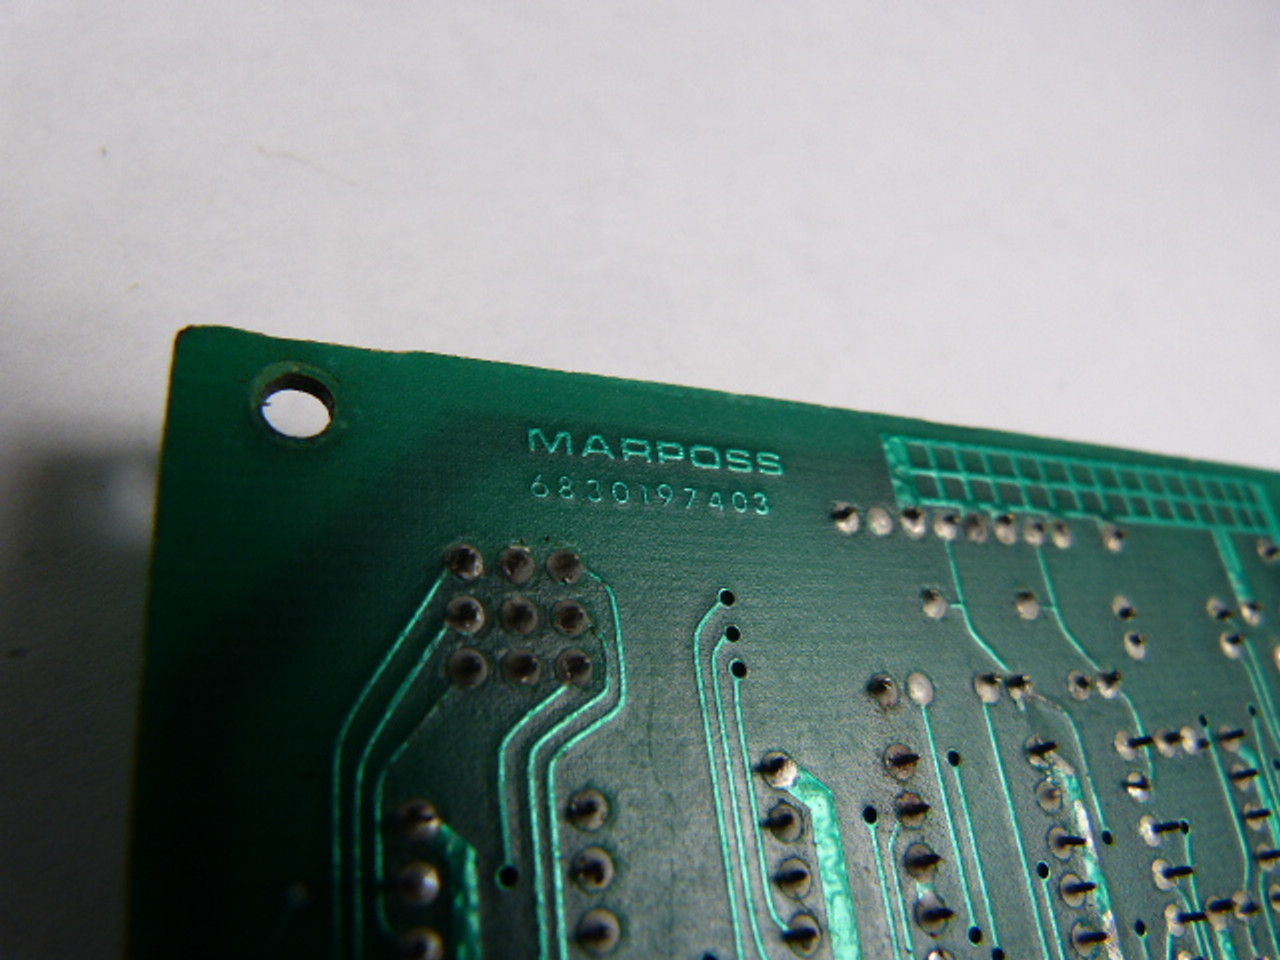 Marposs 6830197403 PC Board Module USED